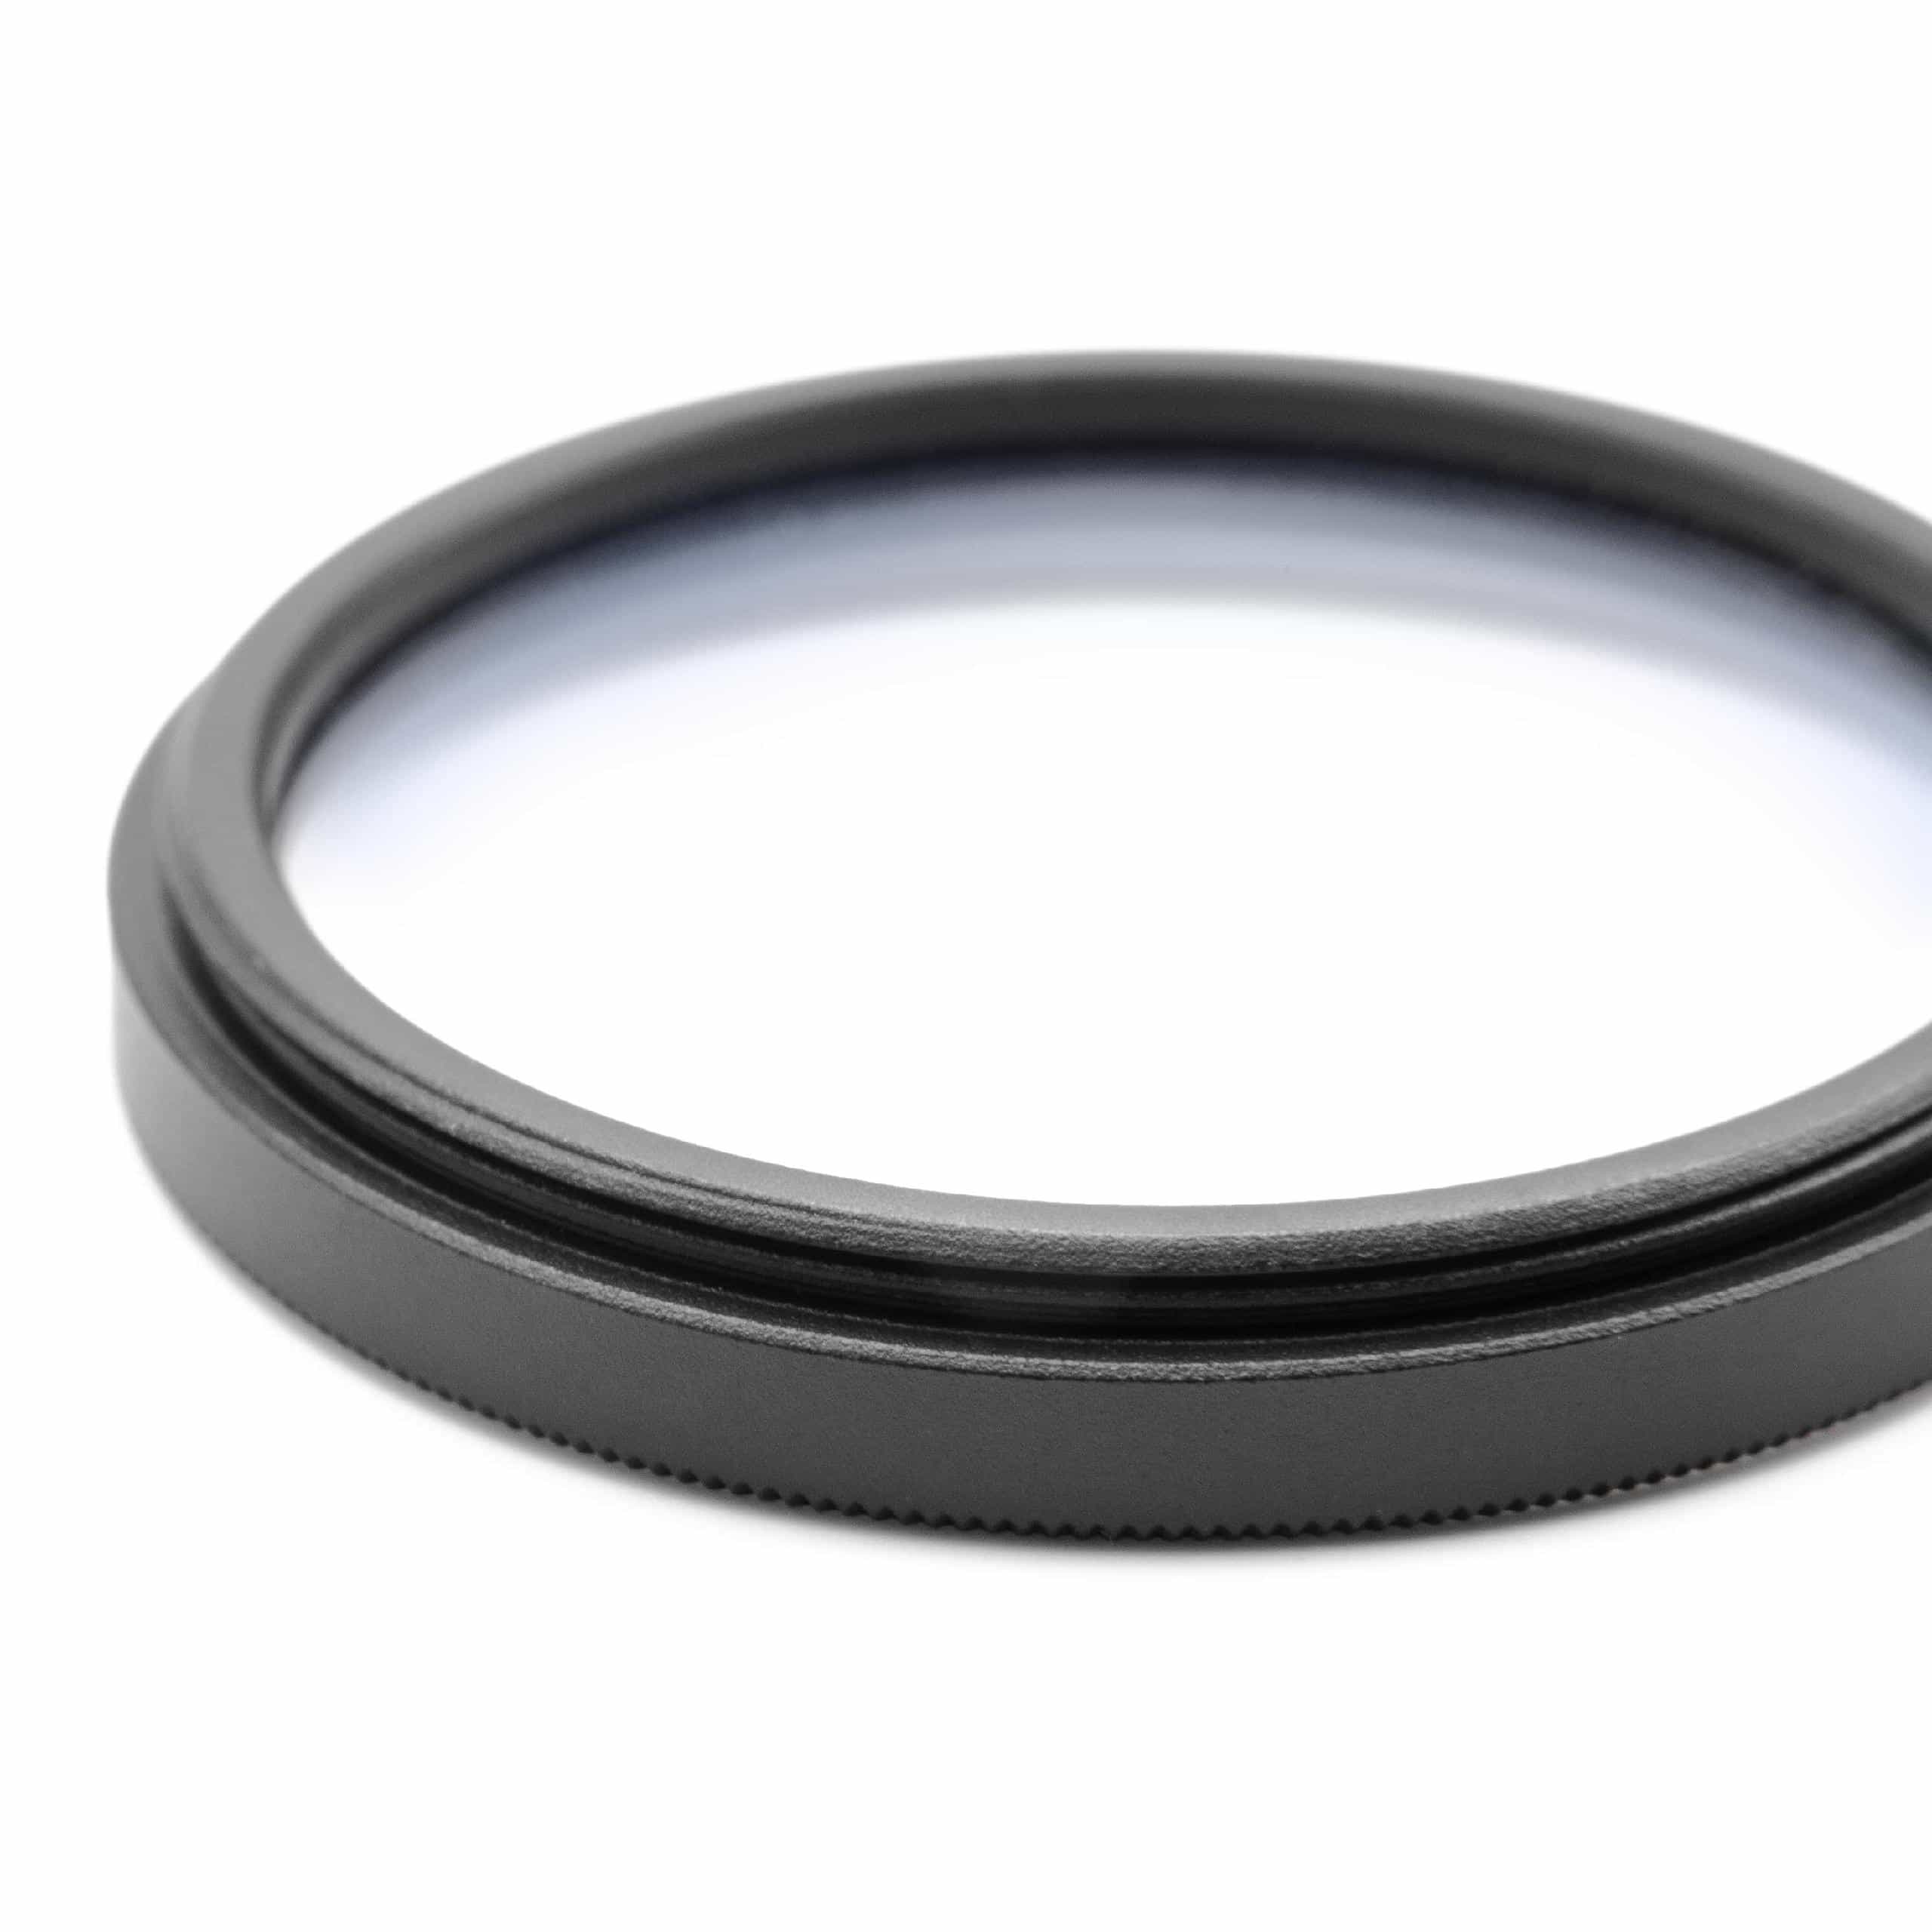 Filtre soft pour objectif d'appareil photo de diamètre 43 mm - Filtre doux